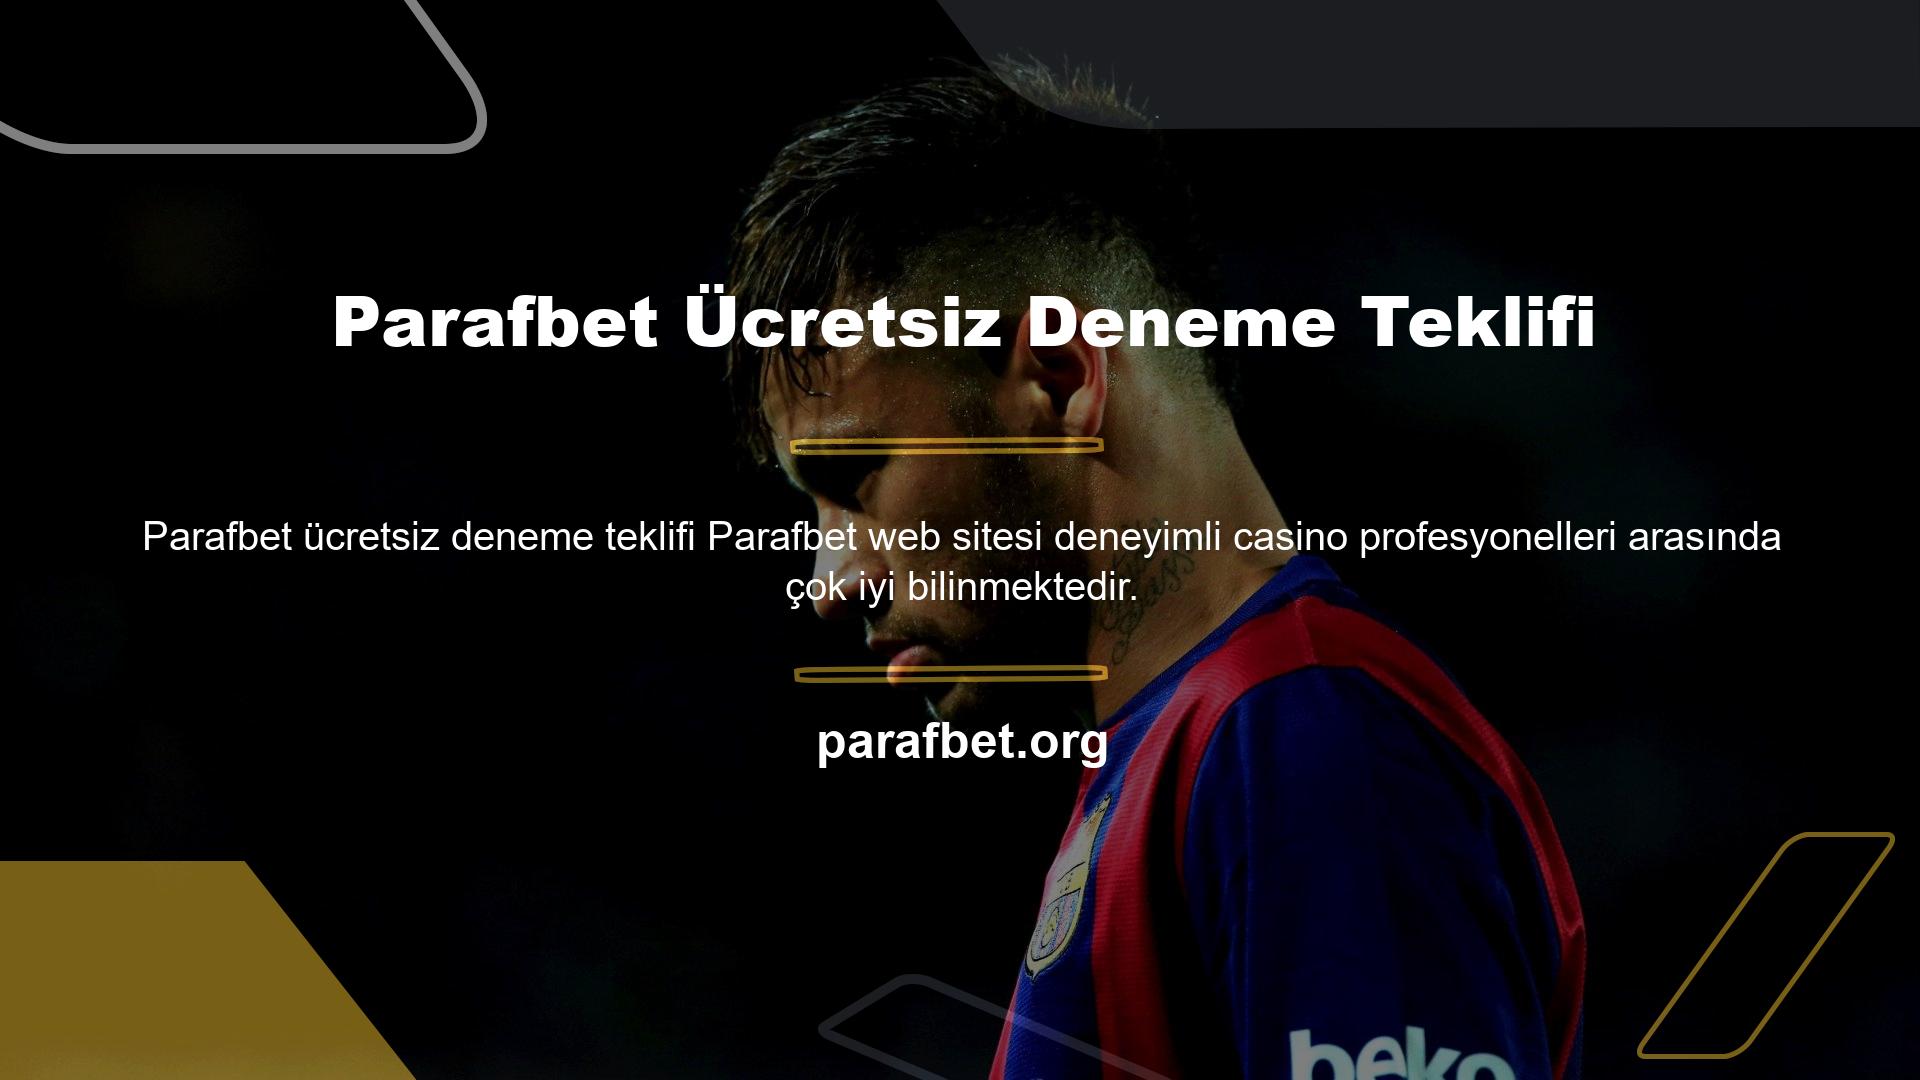 Bu site Parafbet ücretsiz deneme kurumsal bonus görsellerine sahiptir ve Türkiye'de yüksek puanlara sahiptir